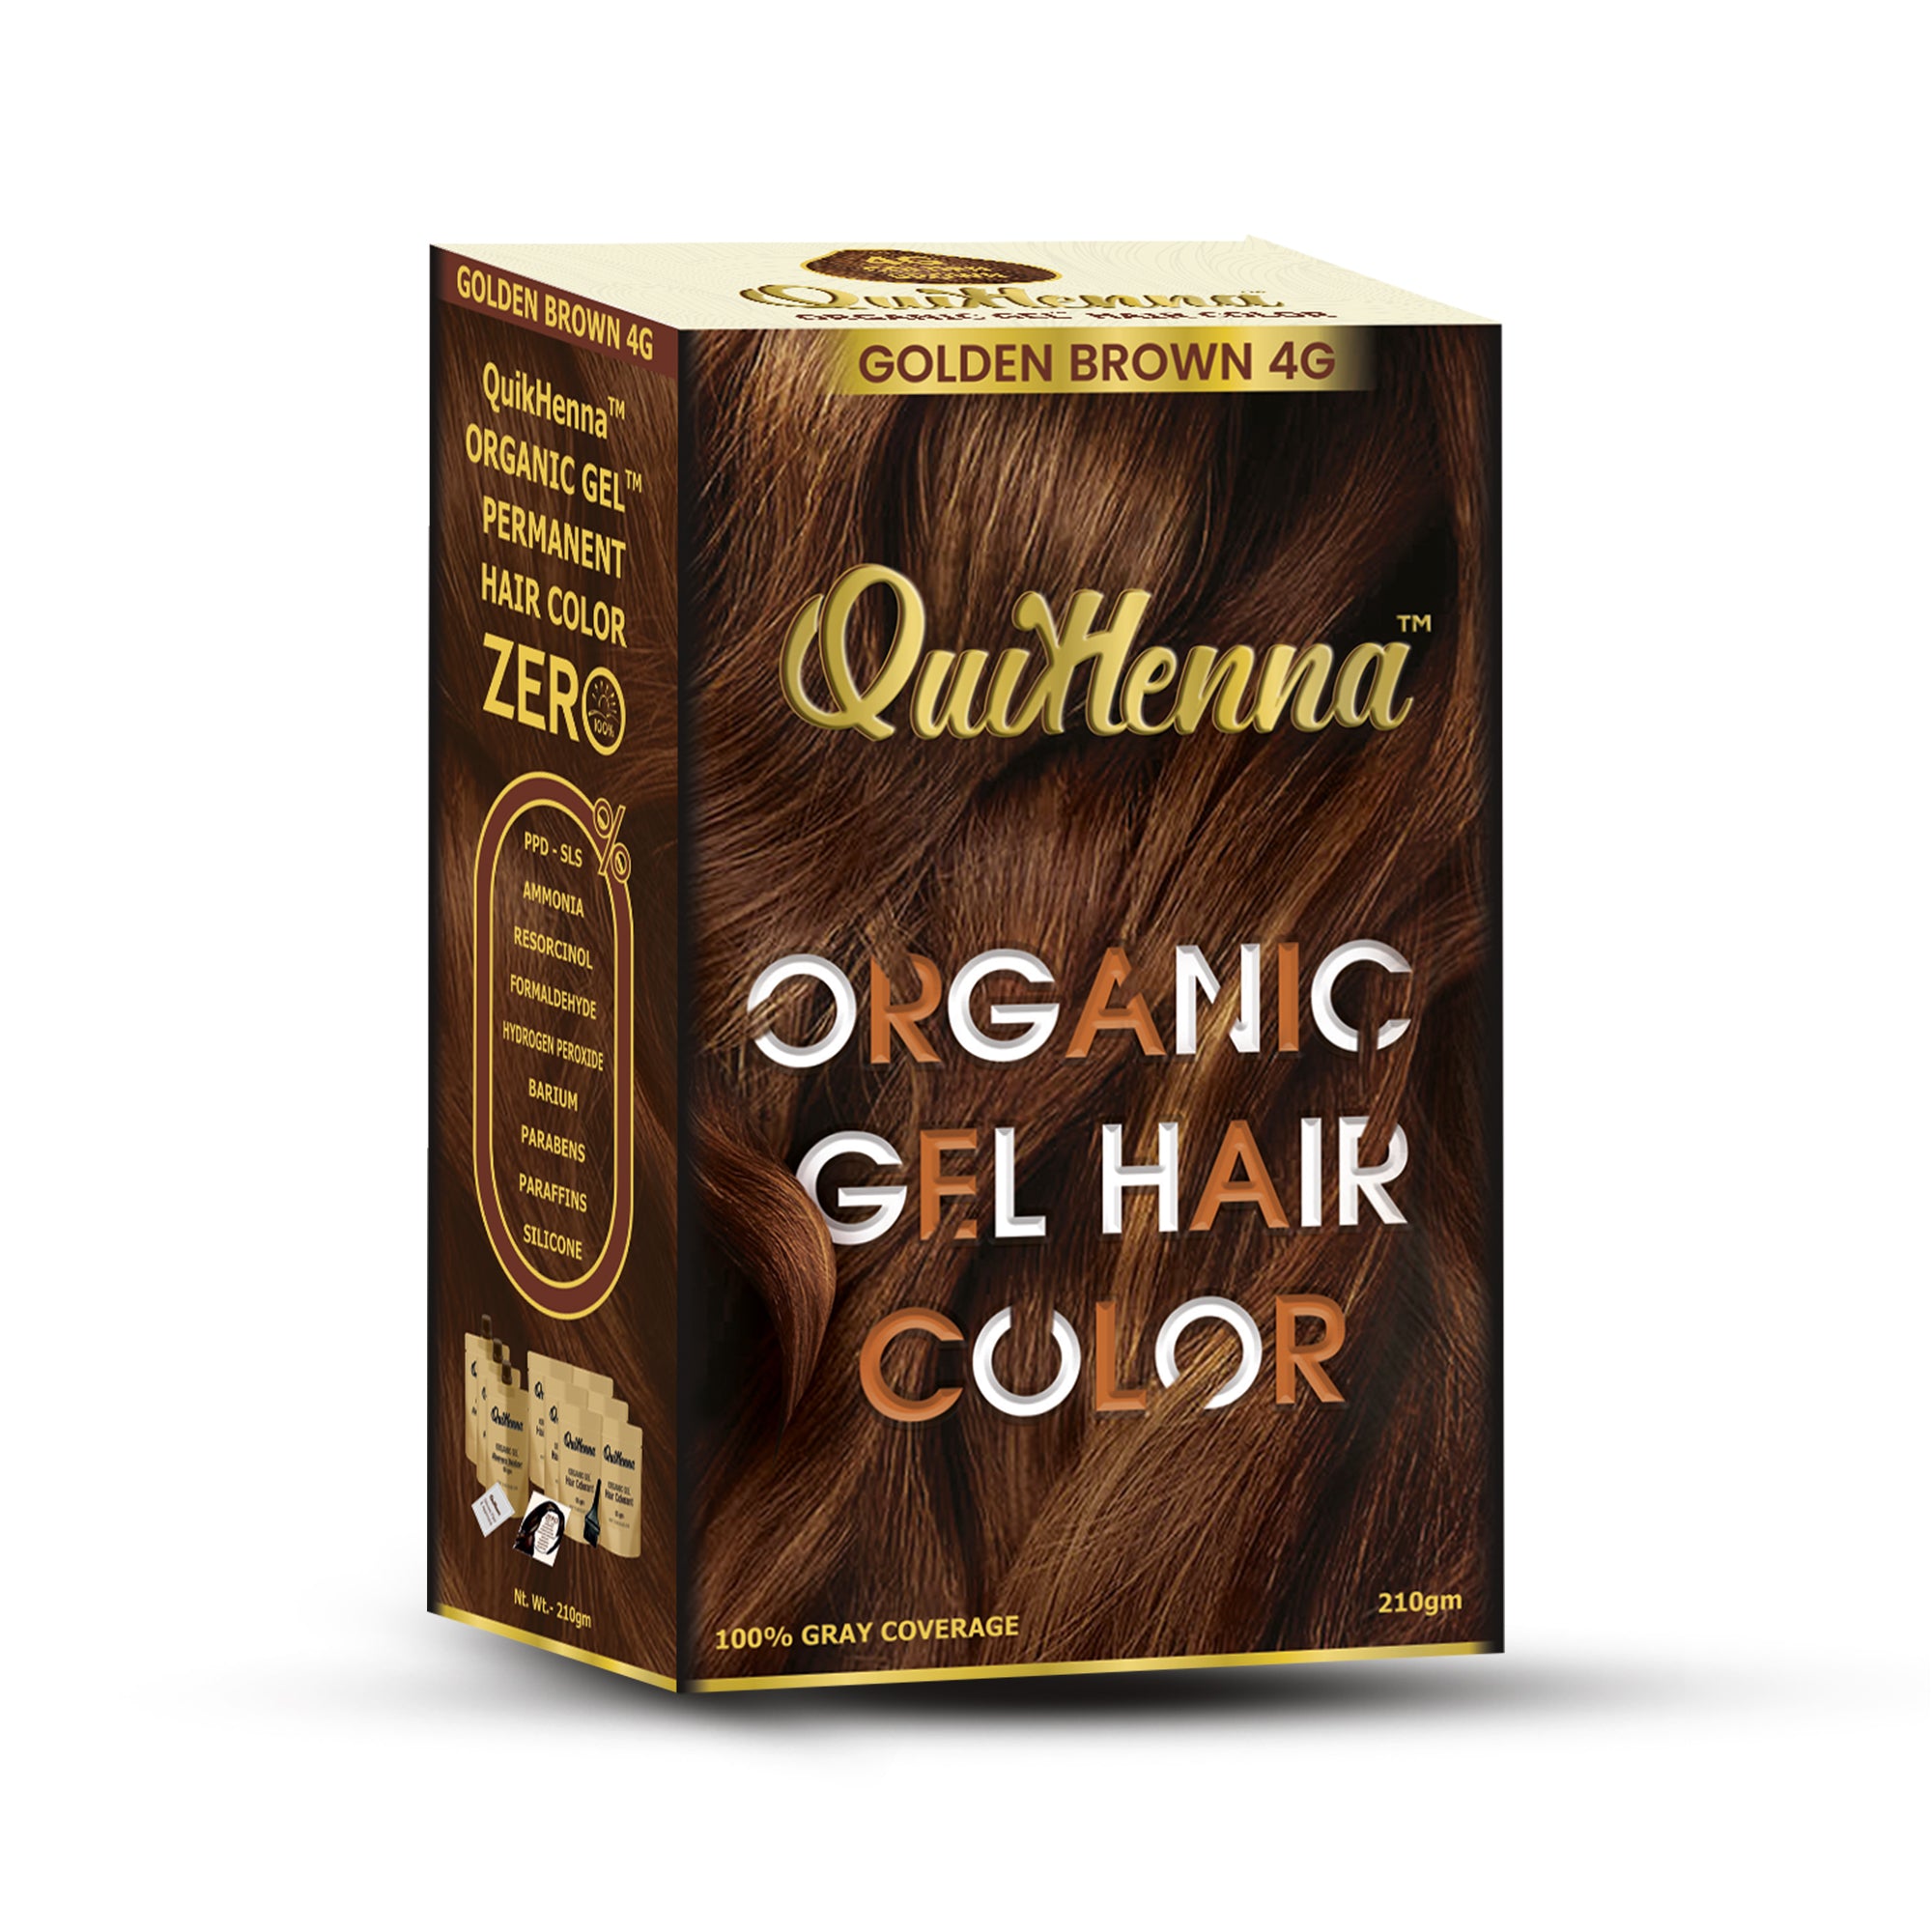 QuikHenna Organic Gel Hair Colour - PPD & Ammonia Free Permanent Natural Hair Color Dye 210gm